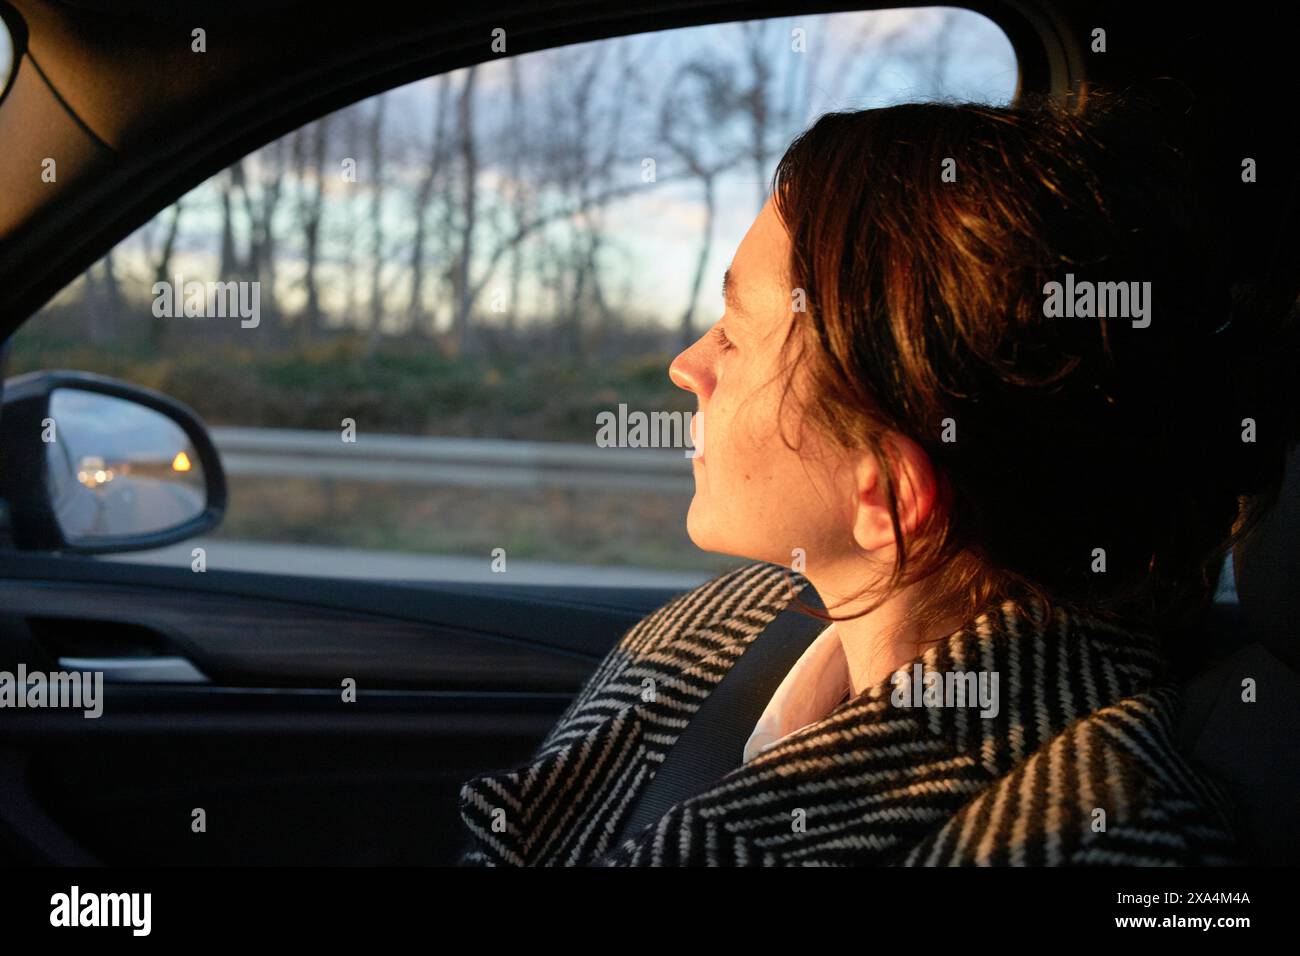 Eine Frau sitzt in einem Auto und schaut während eines Sonnenuntergangs durch das Beifahrerfenster. Sanftes Sonnenlicht beleuchtet die Hälfte ihres Gesichts. Stockfoto